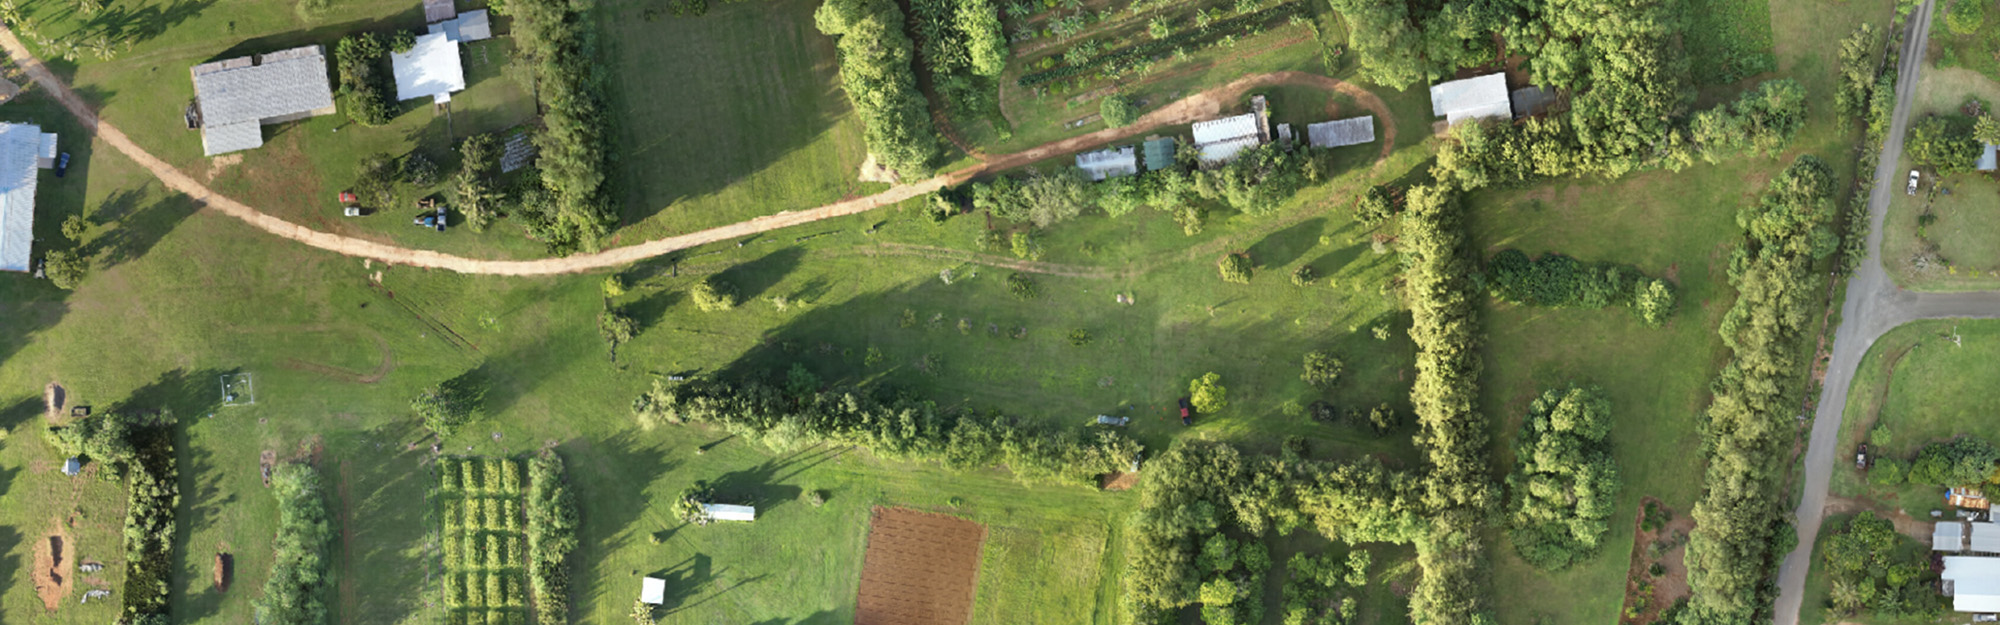 aerial view of a farm